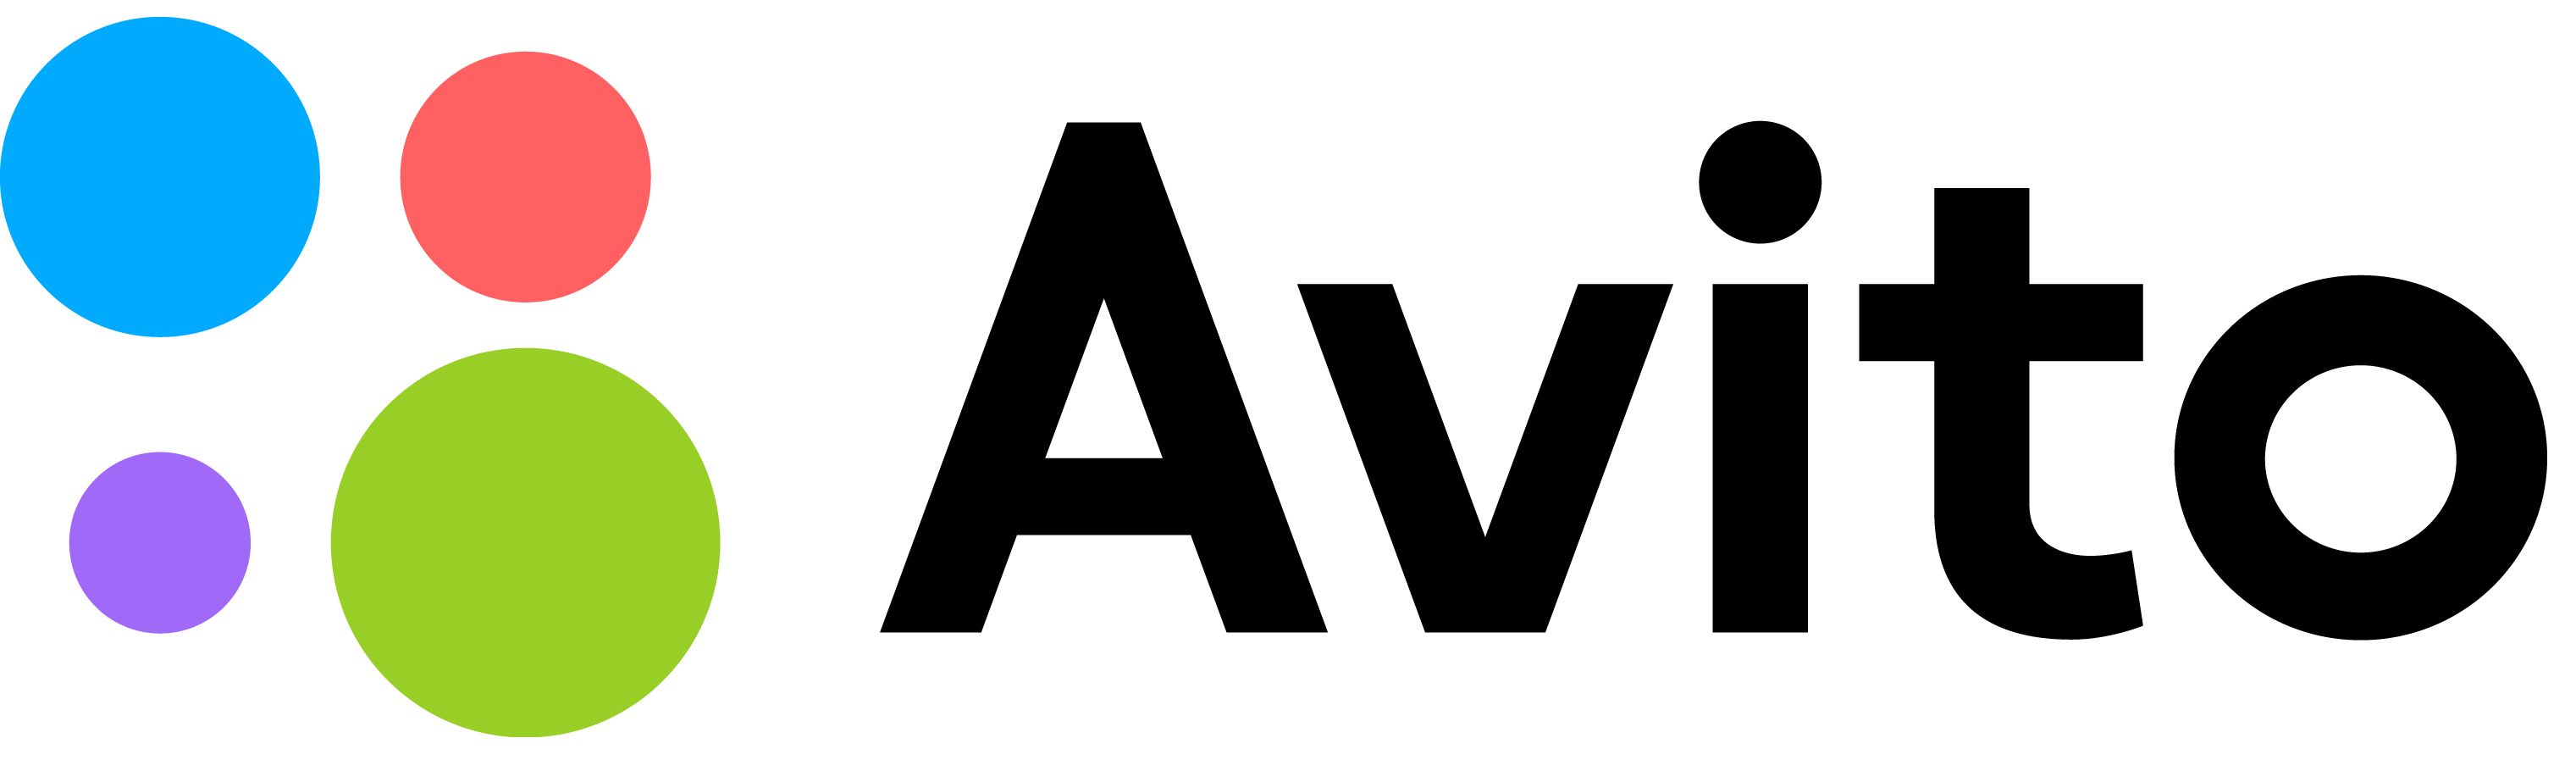 Avito логотип. Логотип авито на прозрачном фоне. Авито маркетплейс. Авито картинка.